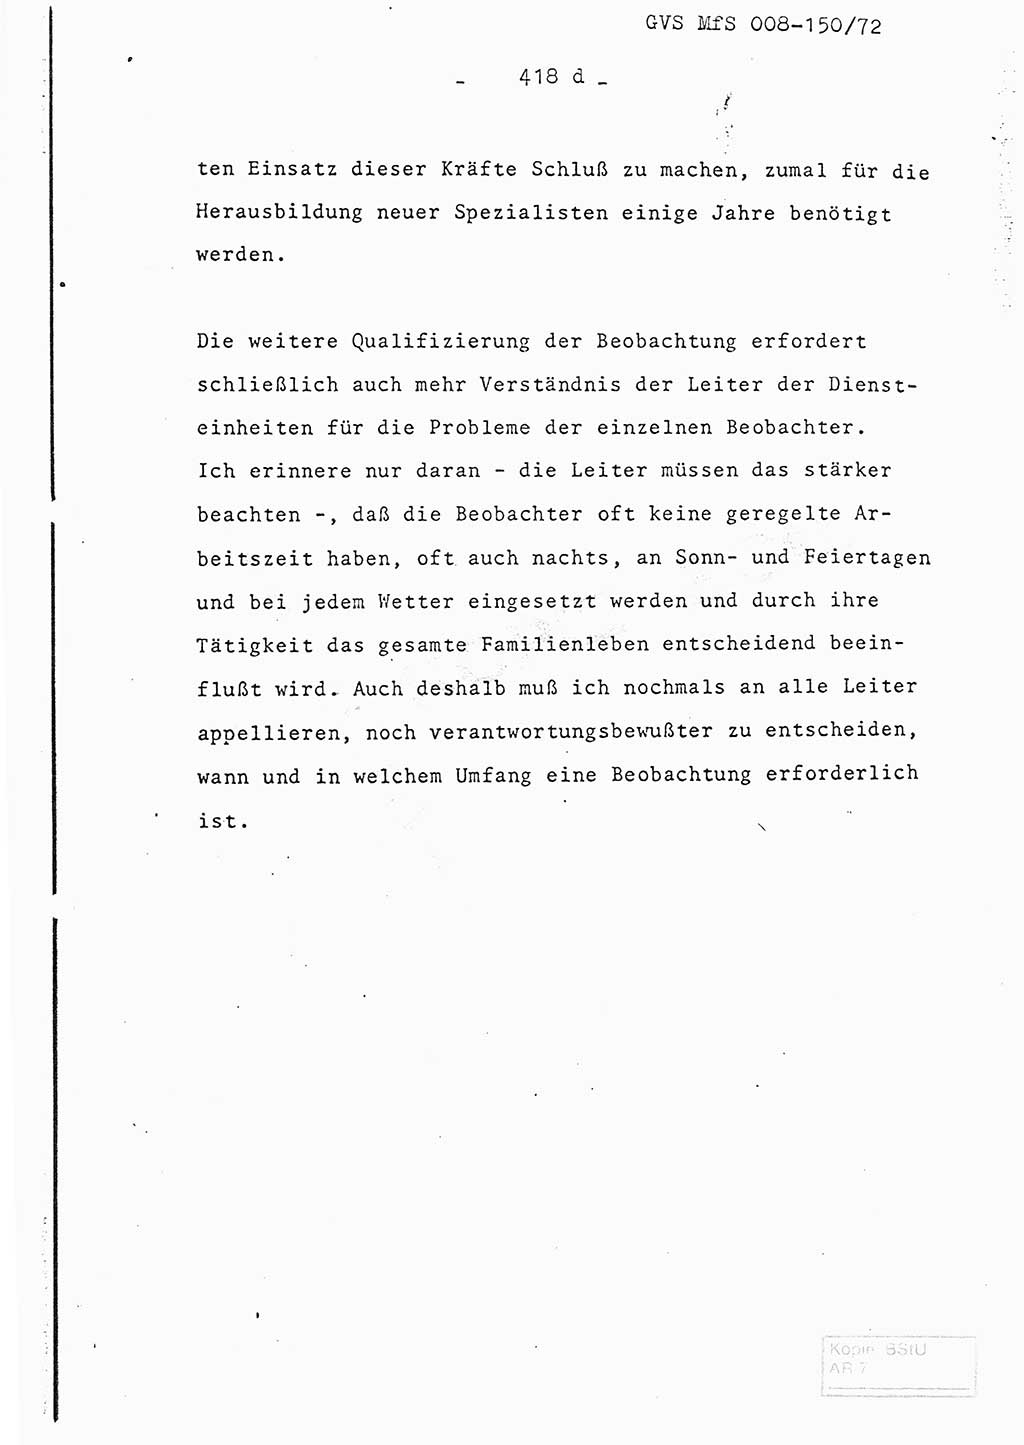 Referat (Entwurf) des Genossen Minister (Generaloberst Erich Mielke) auf der Dienstkonferenz 1972, Ministerium für Staatssicherheit (MfS) [Deutsche Demokratische Republik (DDR)], Der Minister, Geheime Verschlußsache (GVS) 008-150/72, Berlin 25.2.1972, Seite 418/4 (Ref. Entw. DK MfS DDR Min. GVS 008-150/72 1972, S. 418/4)